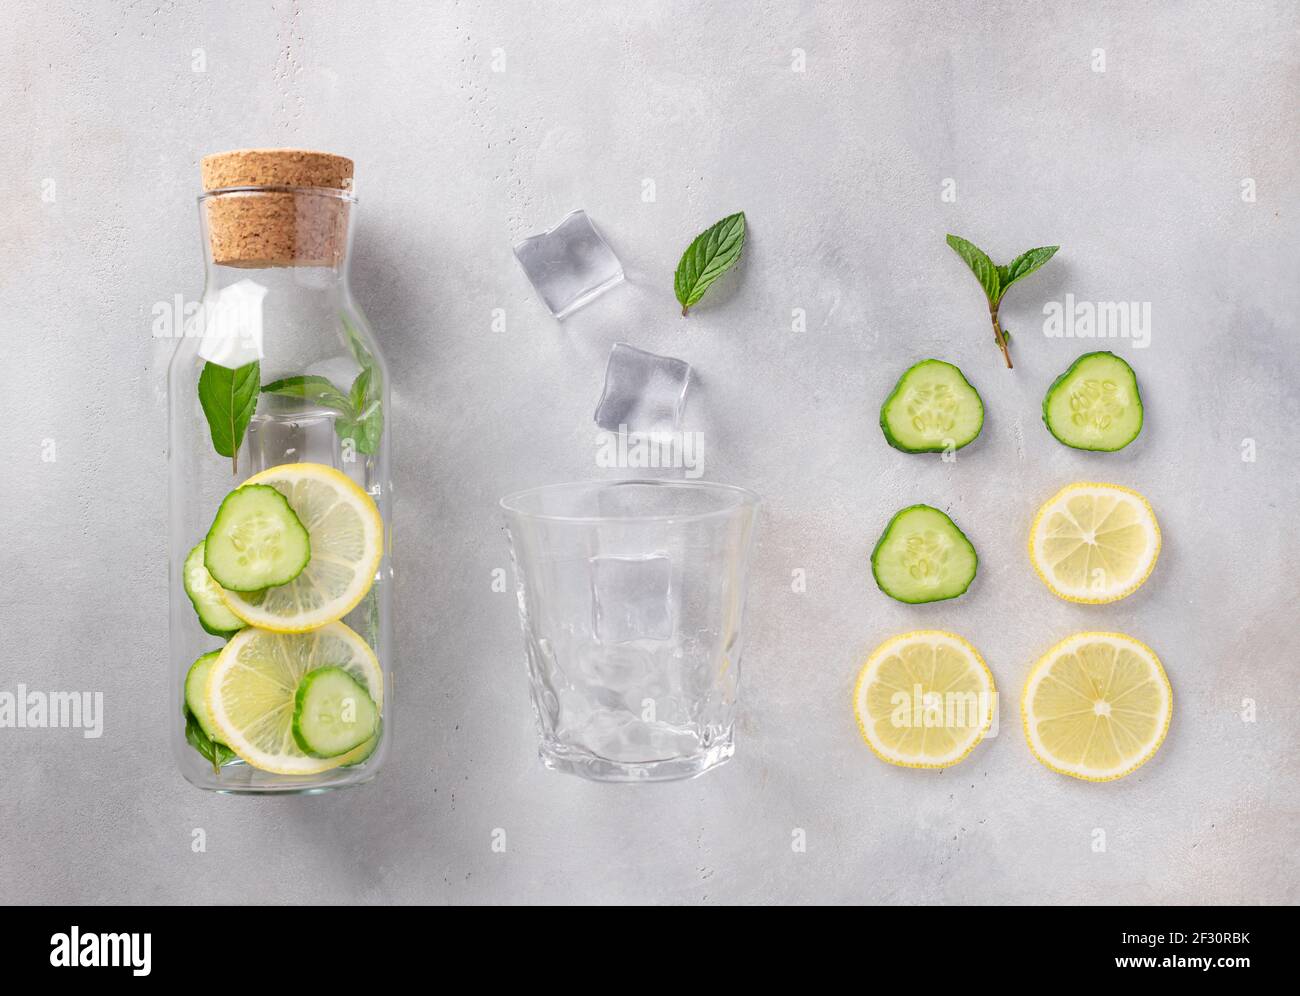 bouteille en verre avec eau infusée avec citron, concombre, menthe Banque D'Images